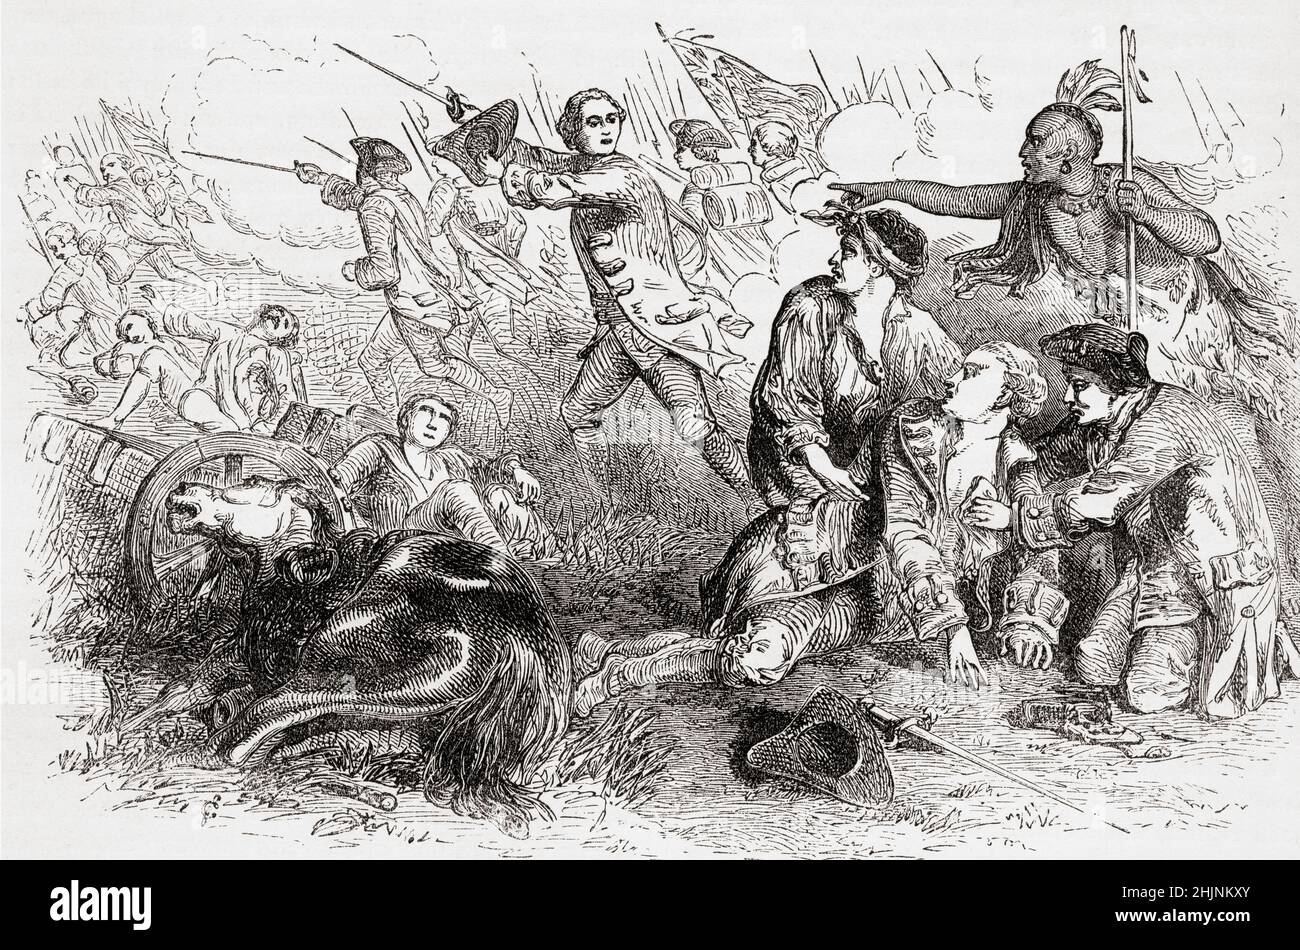 Der Tod von General Wolfe im Jahr 1759 in der Schlacht der Ebenen Abrahams, auch bekannt als die Schlacht von Quebec. James Wolfe, 1727 – 1759. Offizier der britischen Armee. Aus Cassells Illustrated History of England, veröffentlicht um 1890. Stockfoto